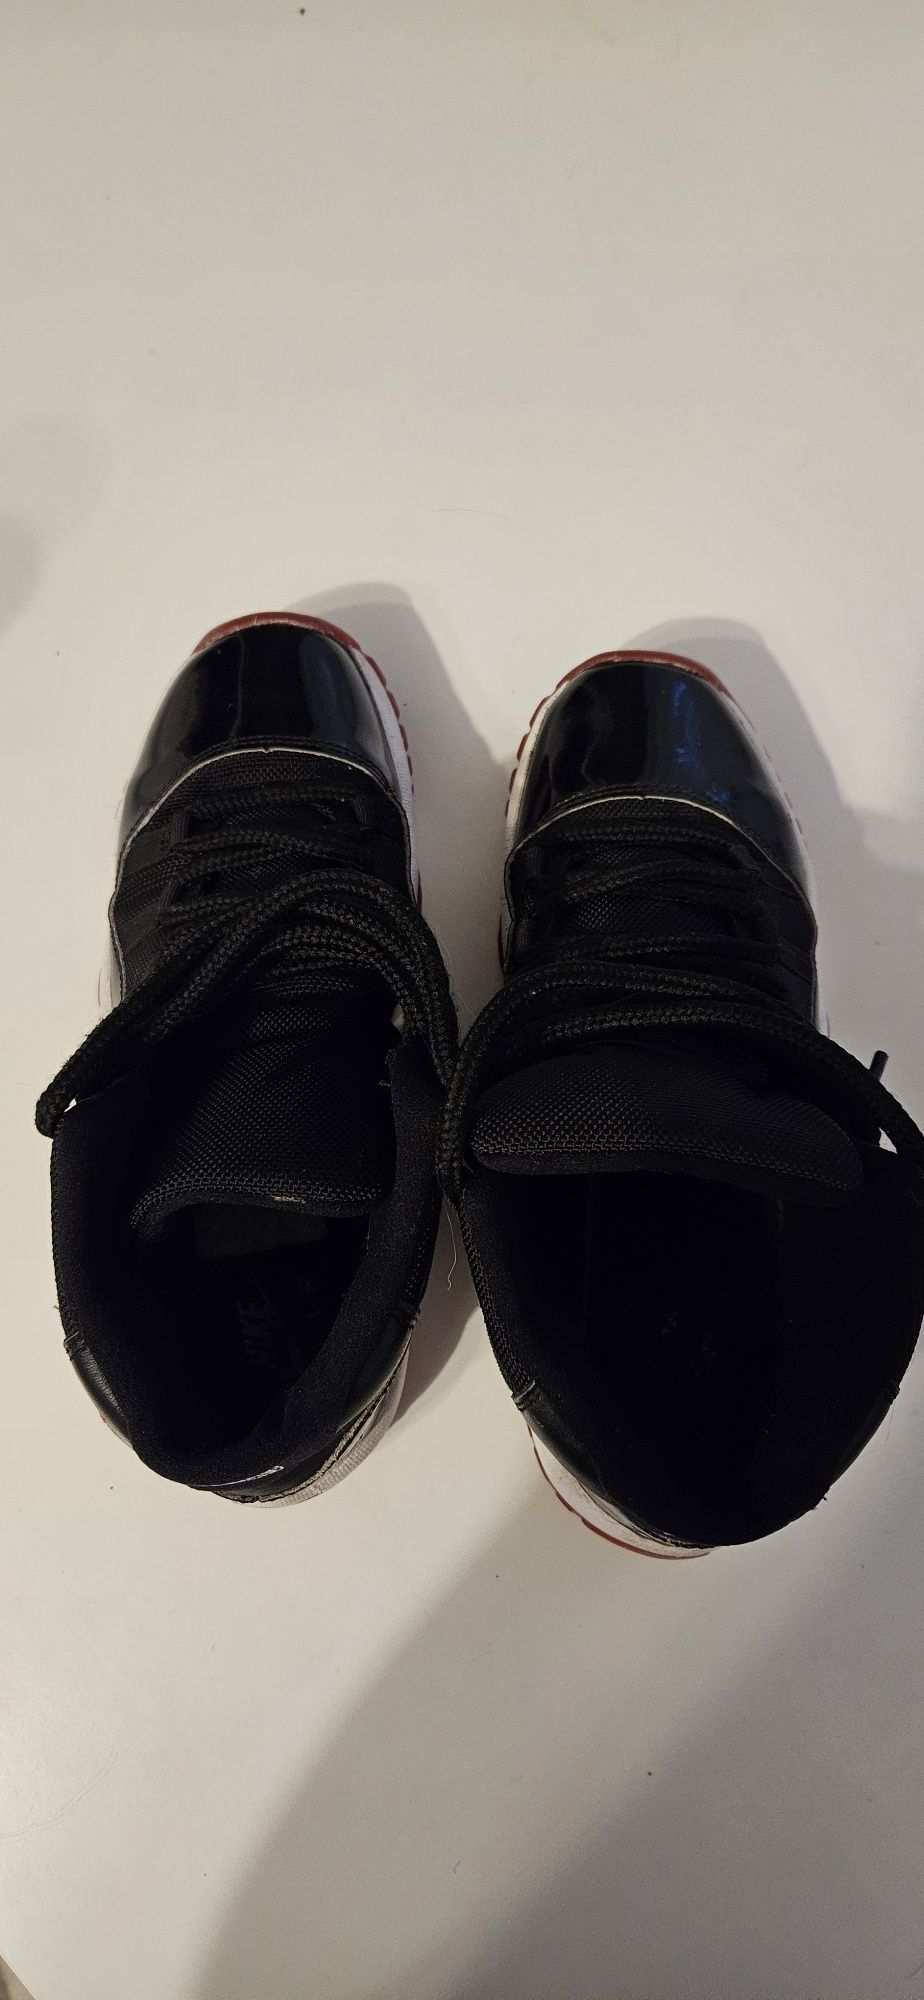 Air Jordan 11 Retro "Bred 2019" sneakers